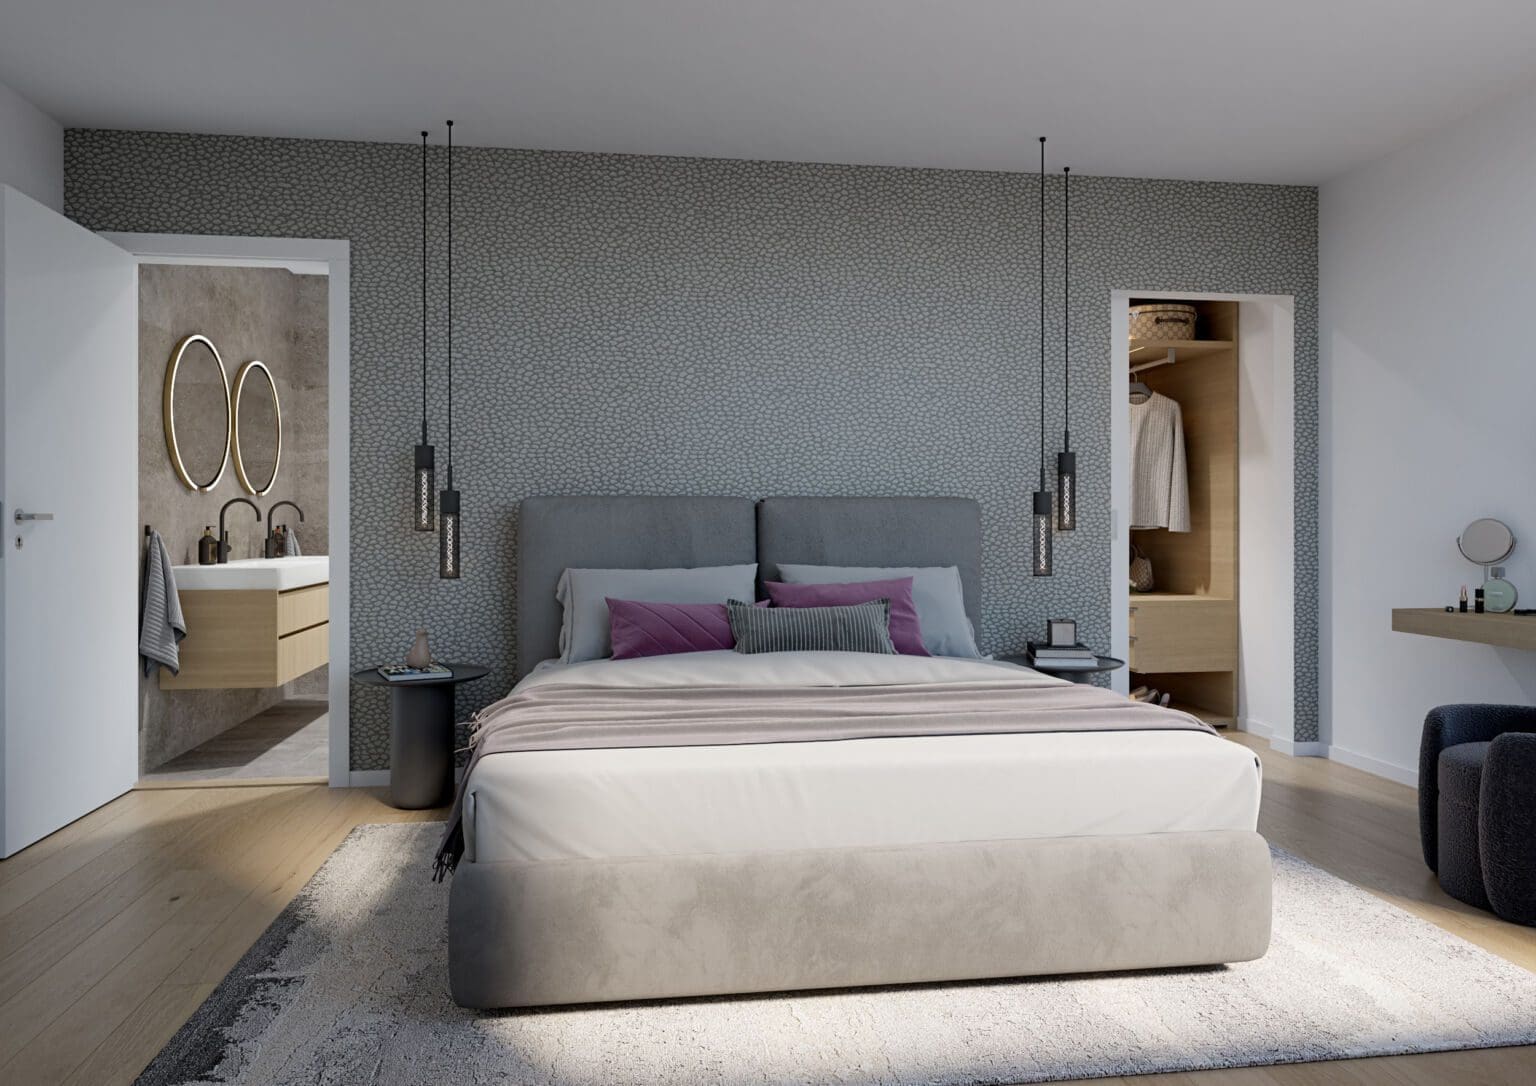 3D Render Bedroom Modern Interior Design